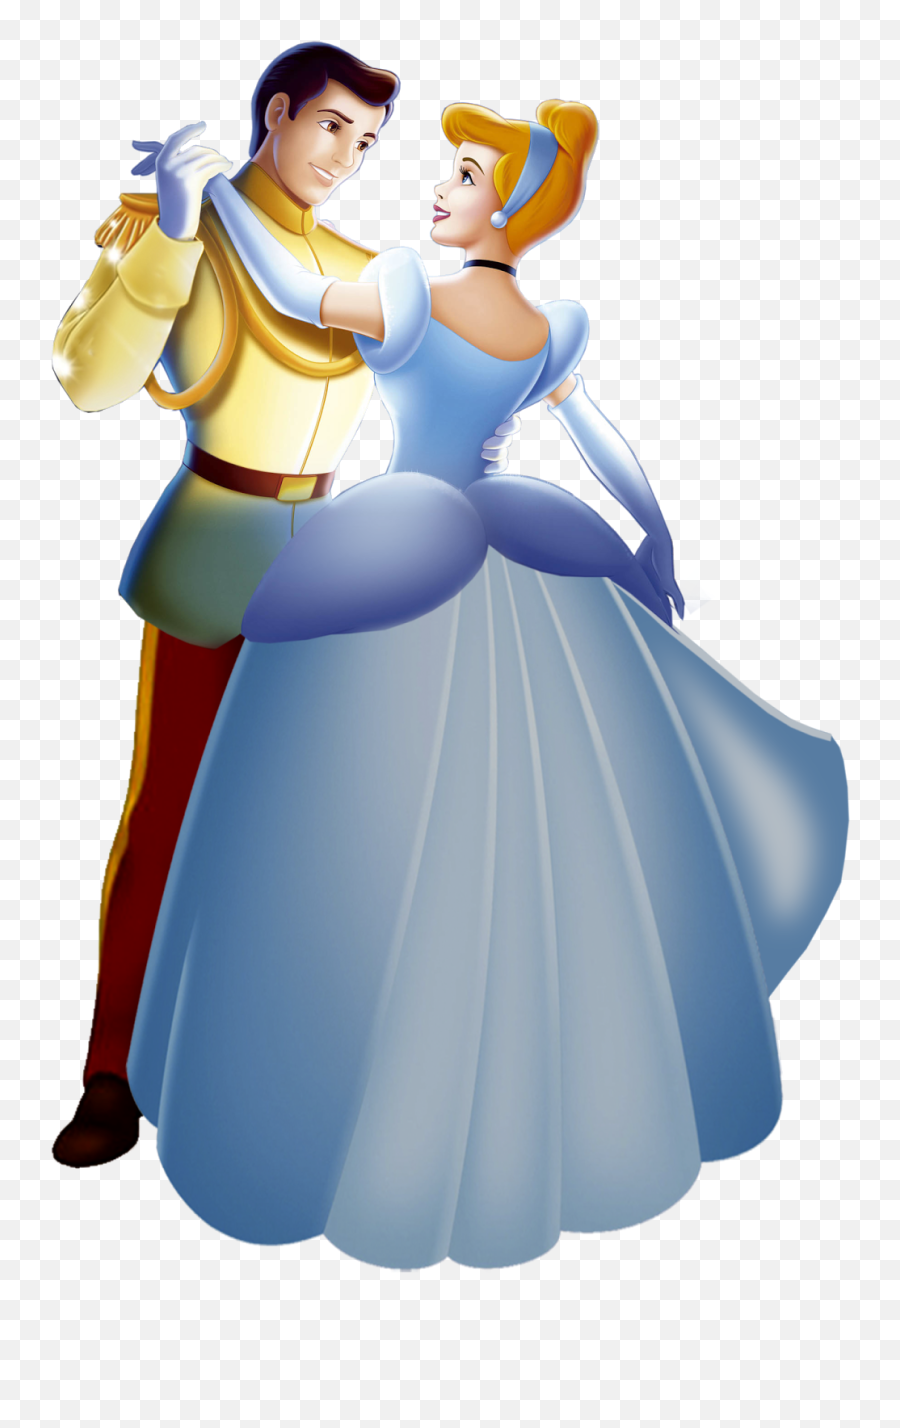 Cinderella Png Images Disney Princess Cartoon Cartoons Emoji,Princess Cinderella Png